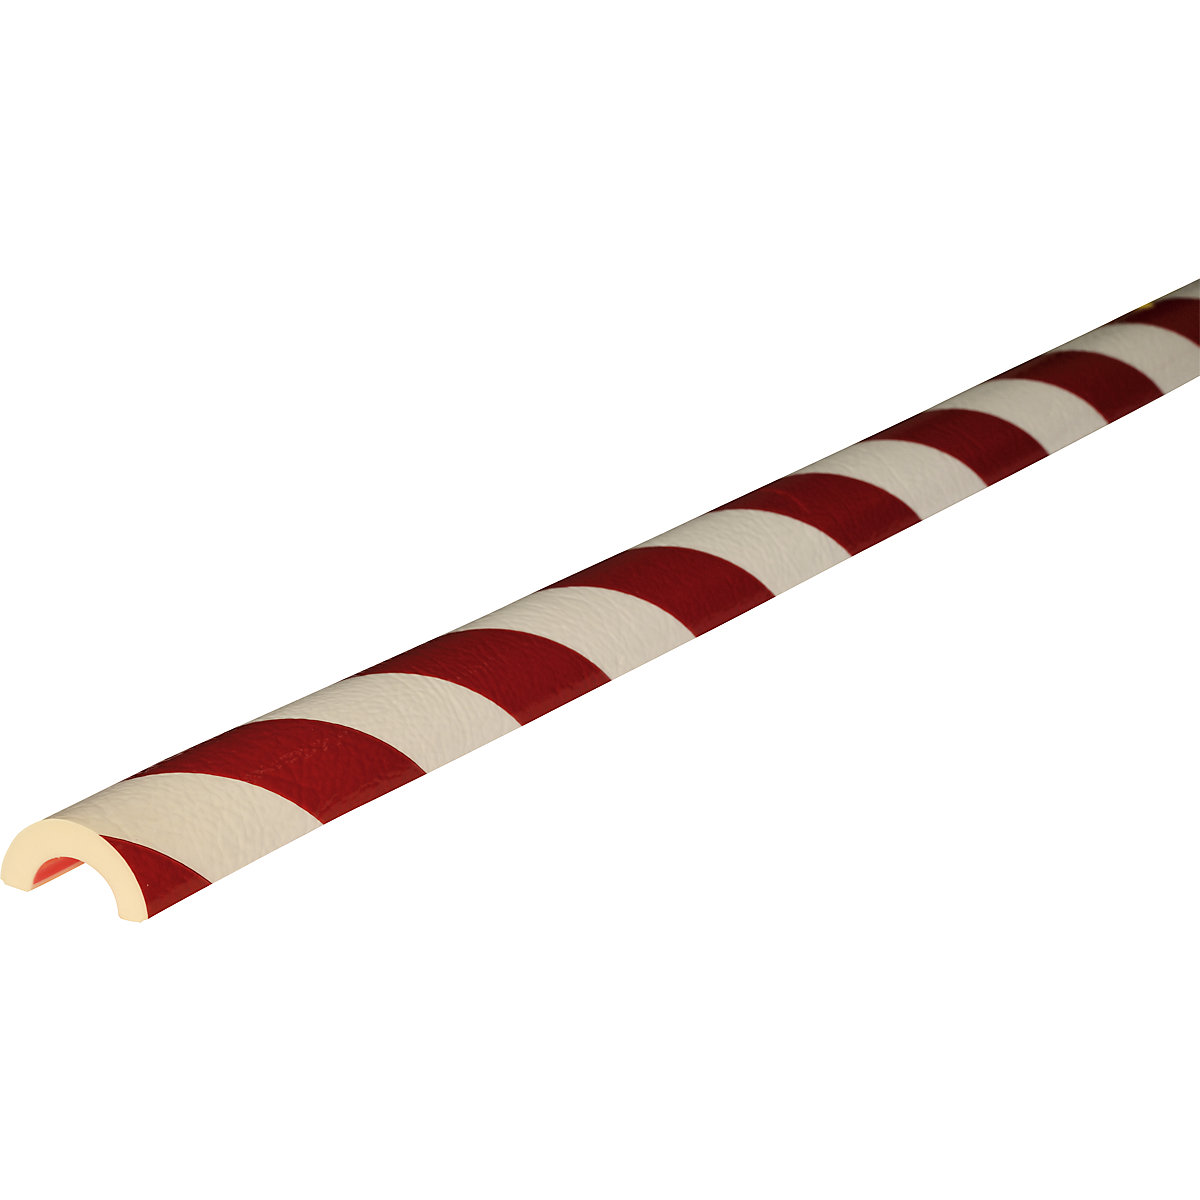 Proteção de tubos Knuffi® – SHG, tipo R30, 1 rolo de 50 m, vermelho/branco-12